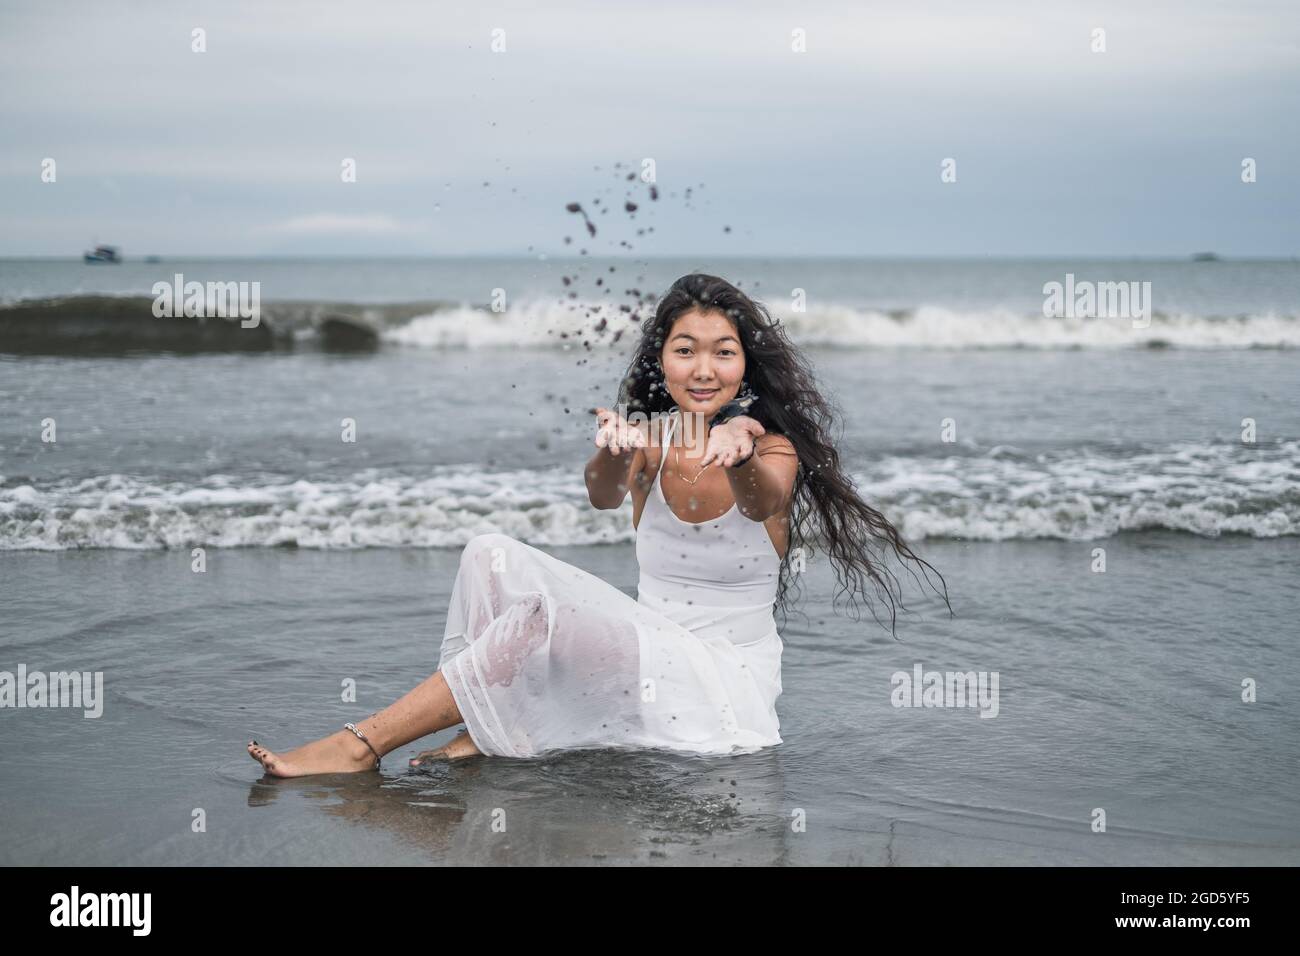 Charmante junge mongolische Frau in weißem Kleid sitzt am Strand und spielt mit Sand. Werfen senden Sie auf. Schwarzes langes lockiges Haar. Romantisch. Meerblick Stockfoto